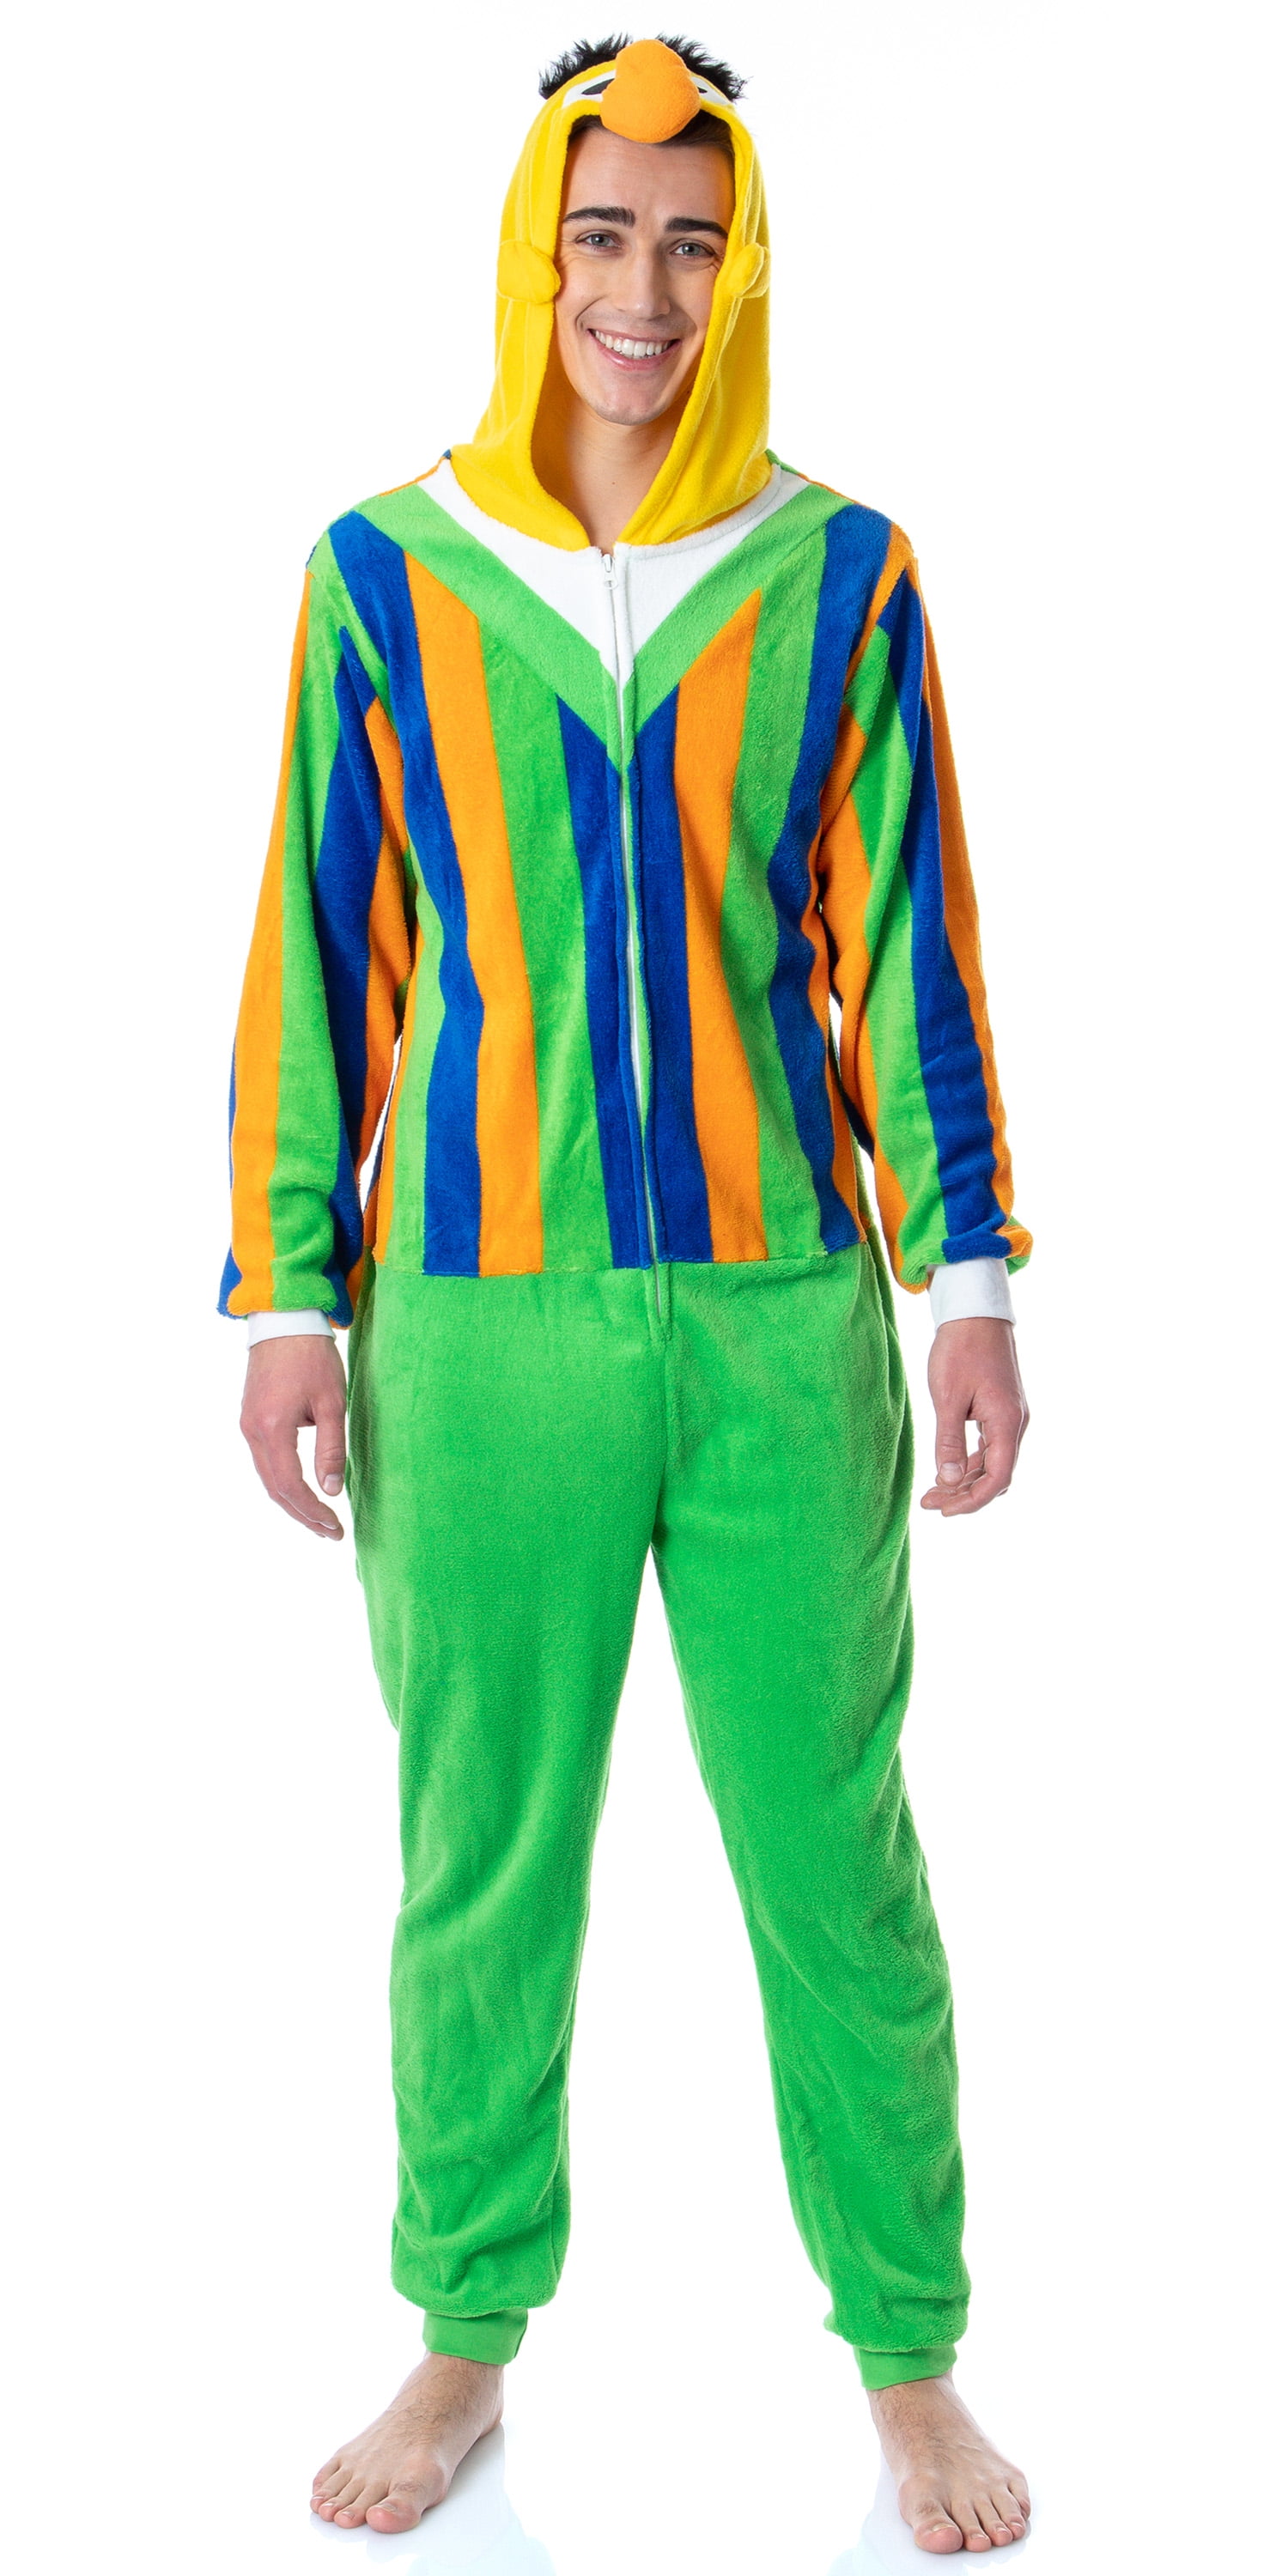 Zwembad Compliment samen Sesame Street Adult Bert Character Union Suit Costume Pajama For Men Women  M - Walmart.com